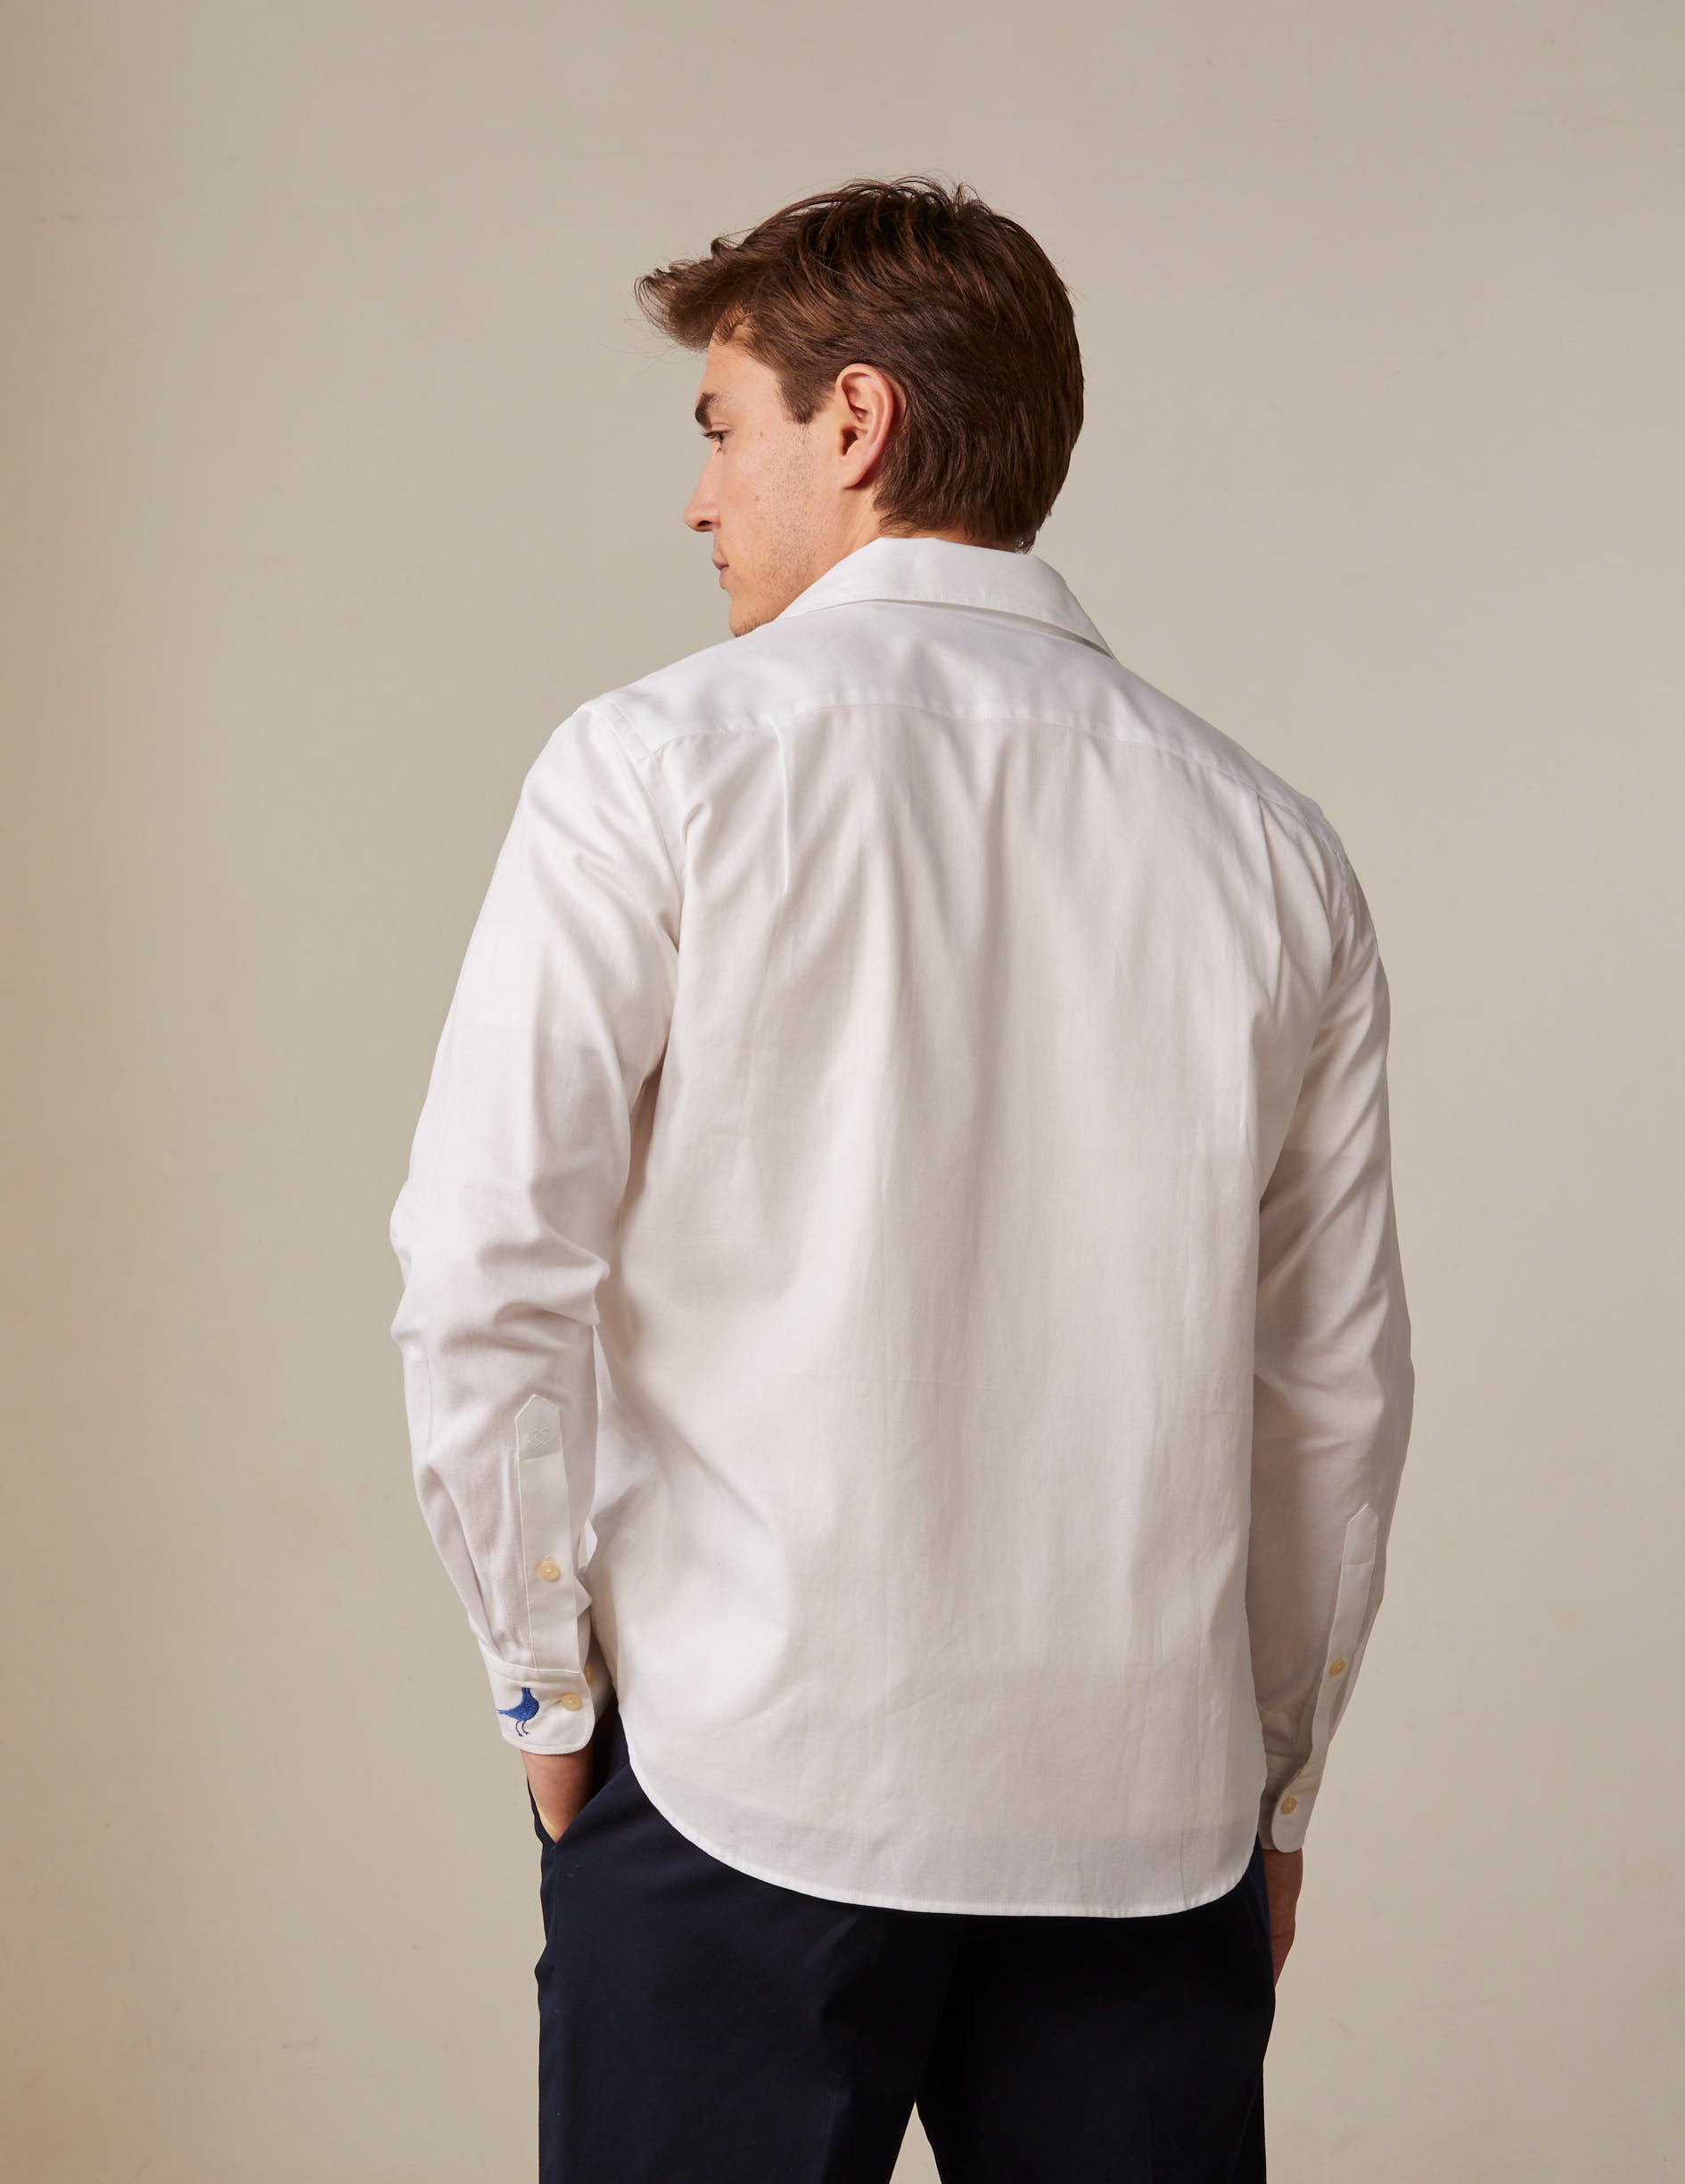 White Pedro shirt - Piqué cotton - Shirt Collar